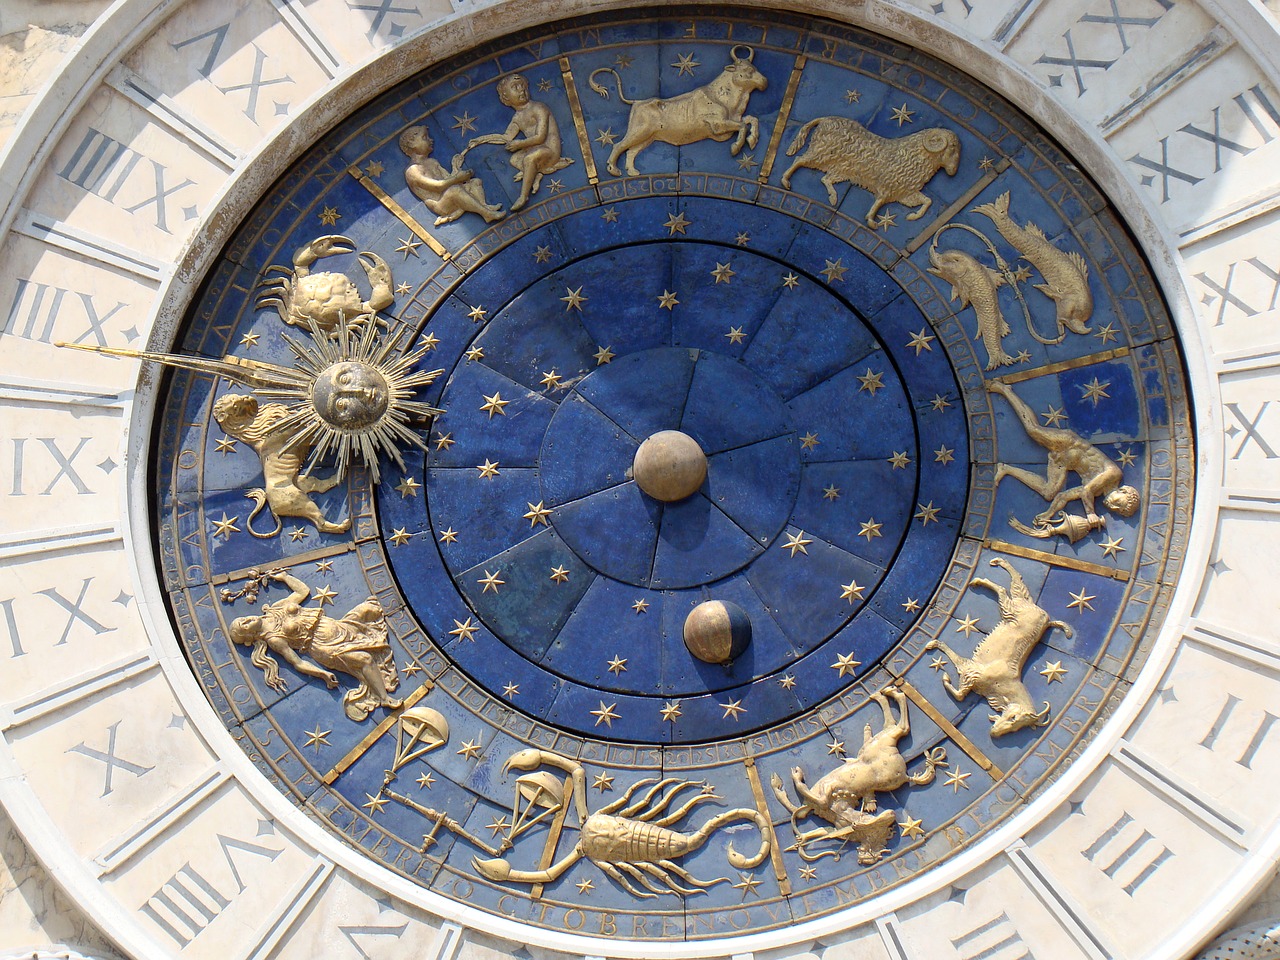 Μηνιαίες αστρολογικές προβλέψεις – Δεκέμβριος 2021: Πώς θα είναι ο μήνας σου σύμφωνα με το ζώδιό σου